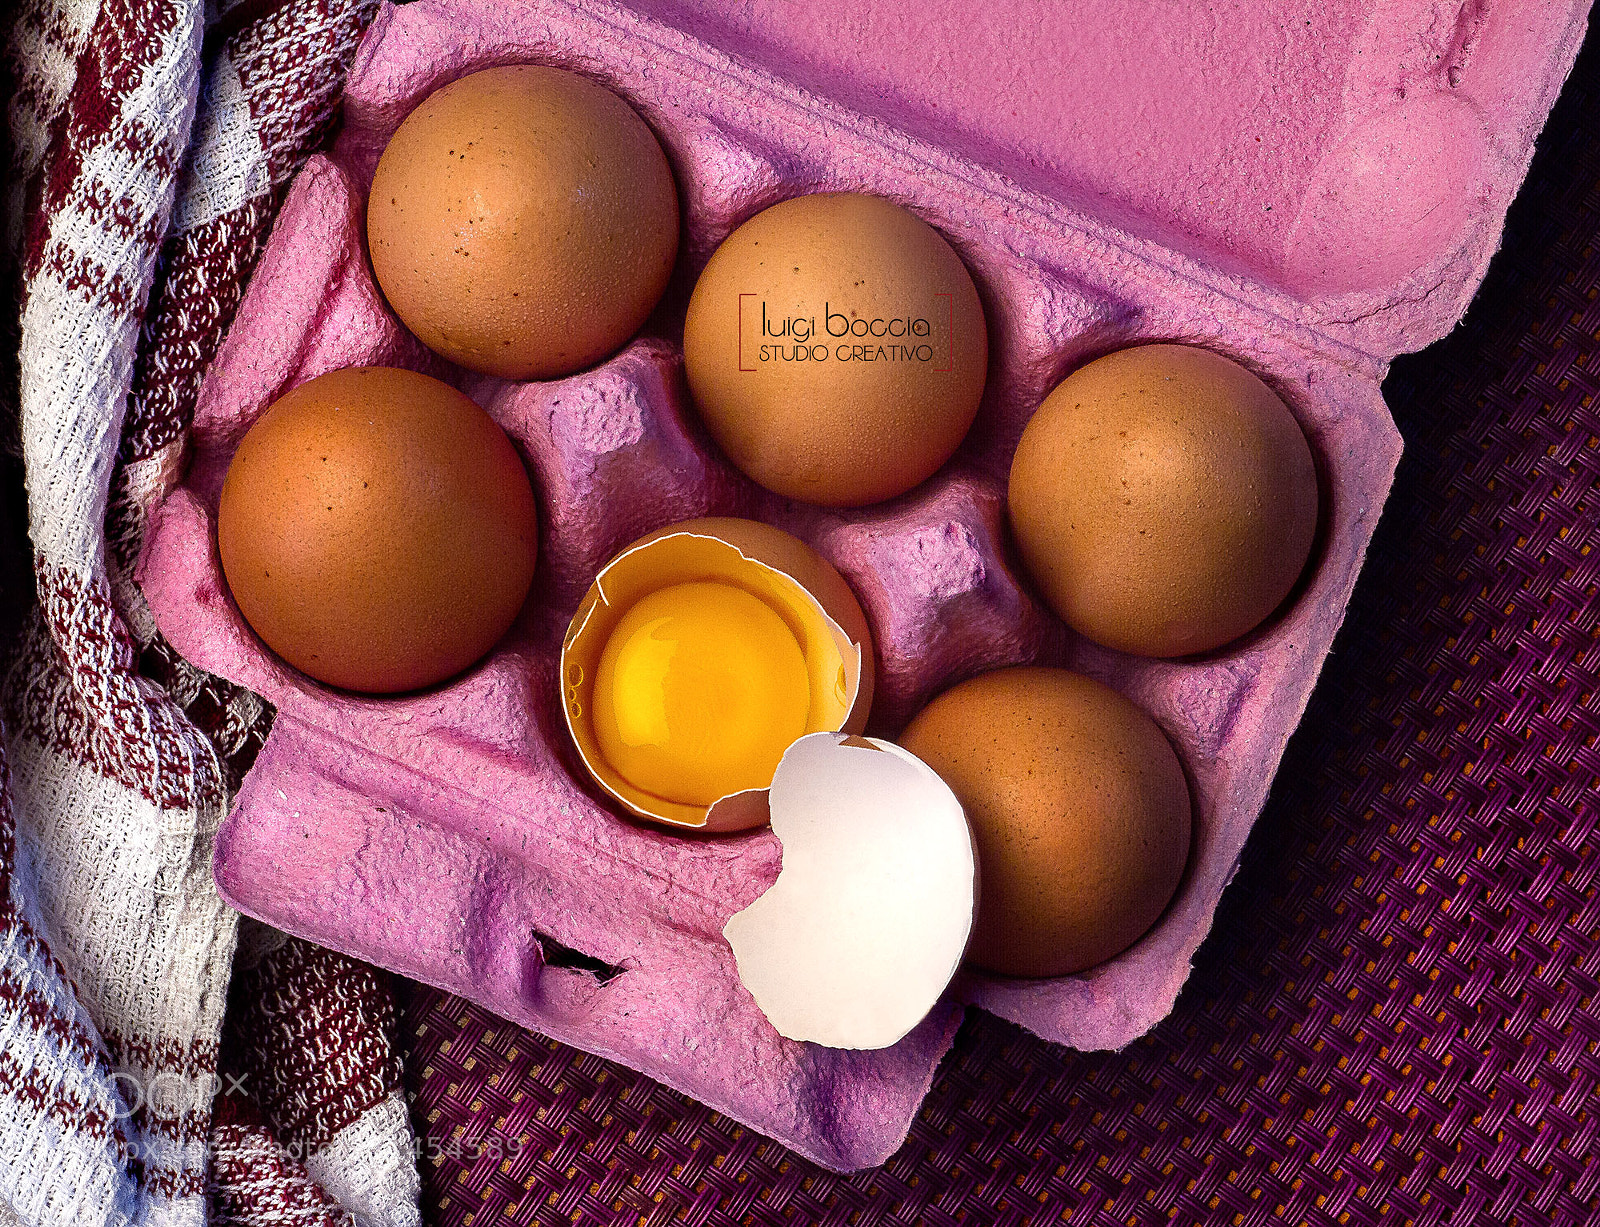 Canon EOS 7D sample photo. Eggs photography